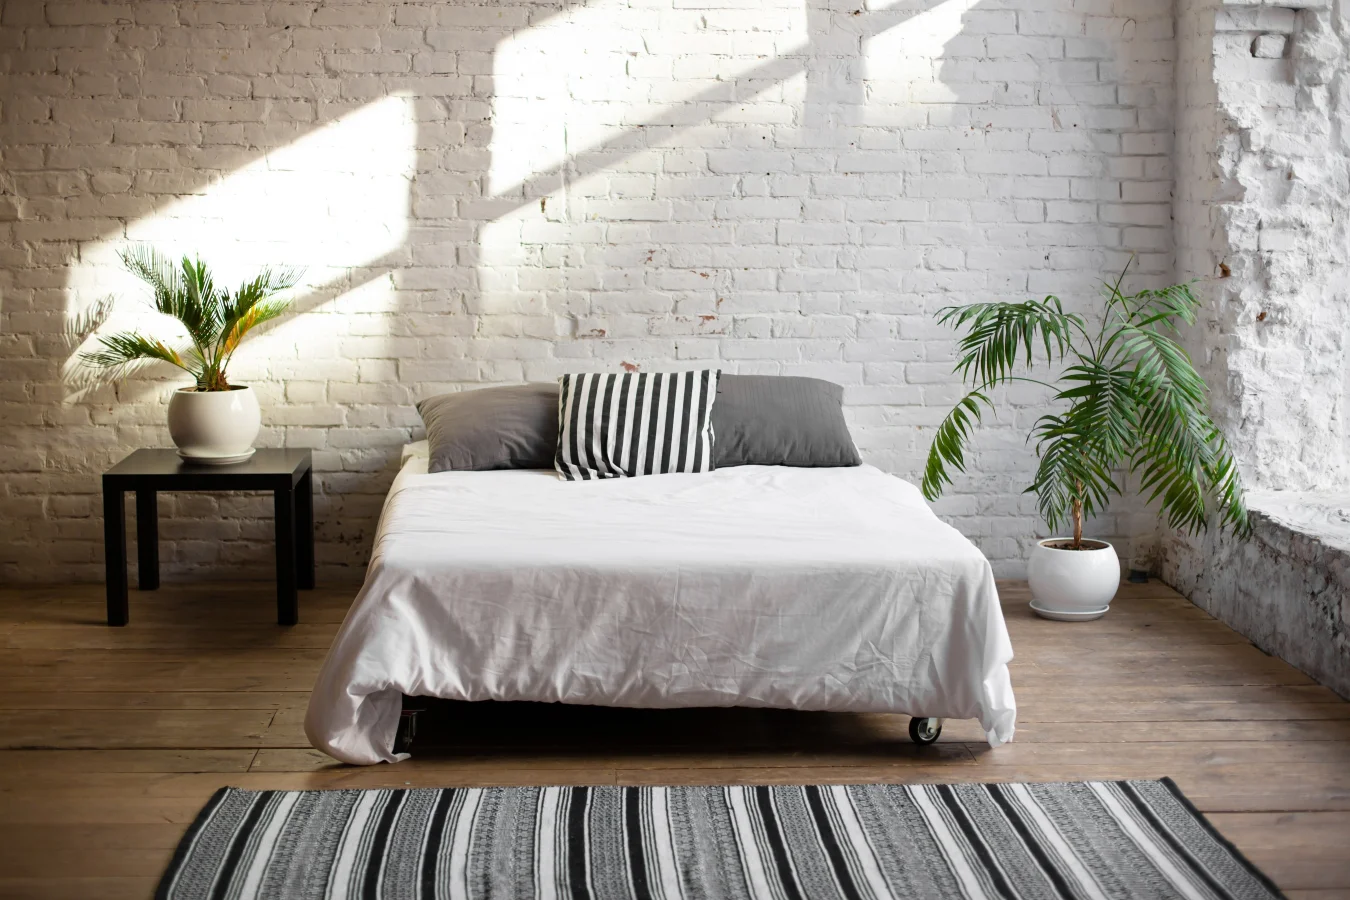 Sypialnia loft to wnętrze minimalistyczne.